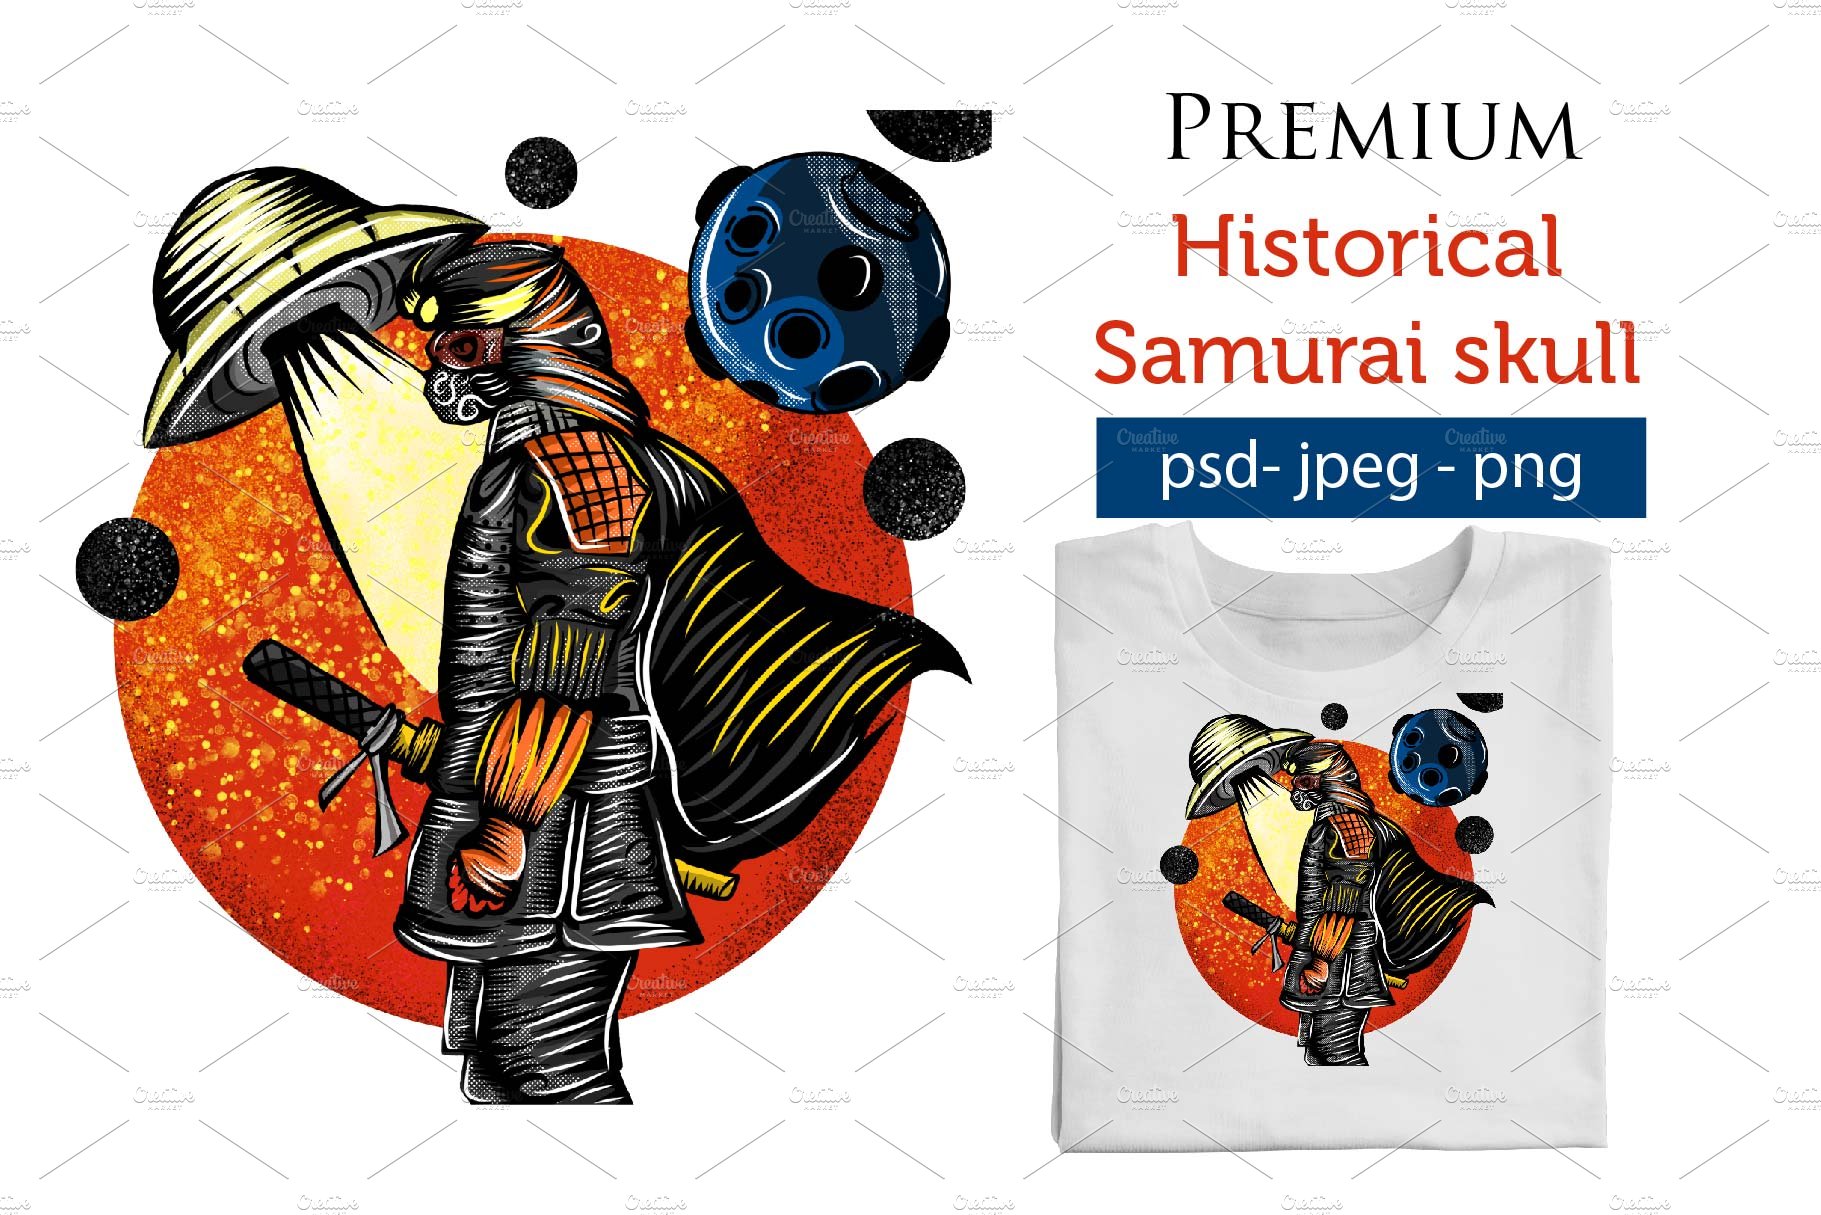 Premium Hster Samurai cover image.